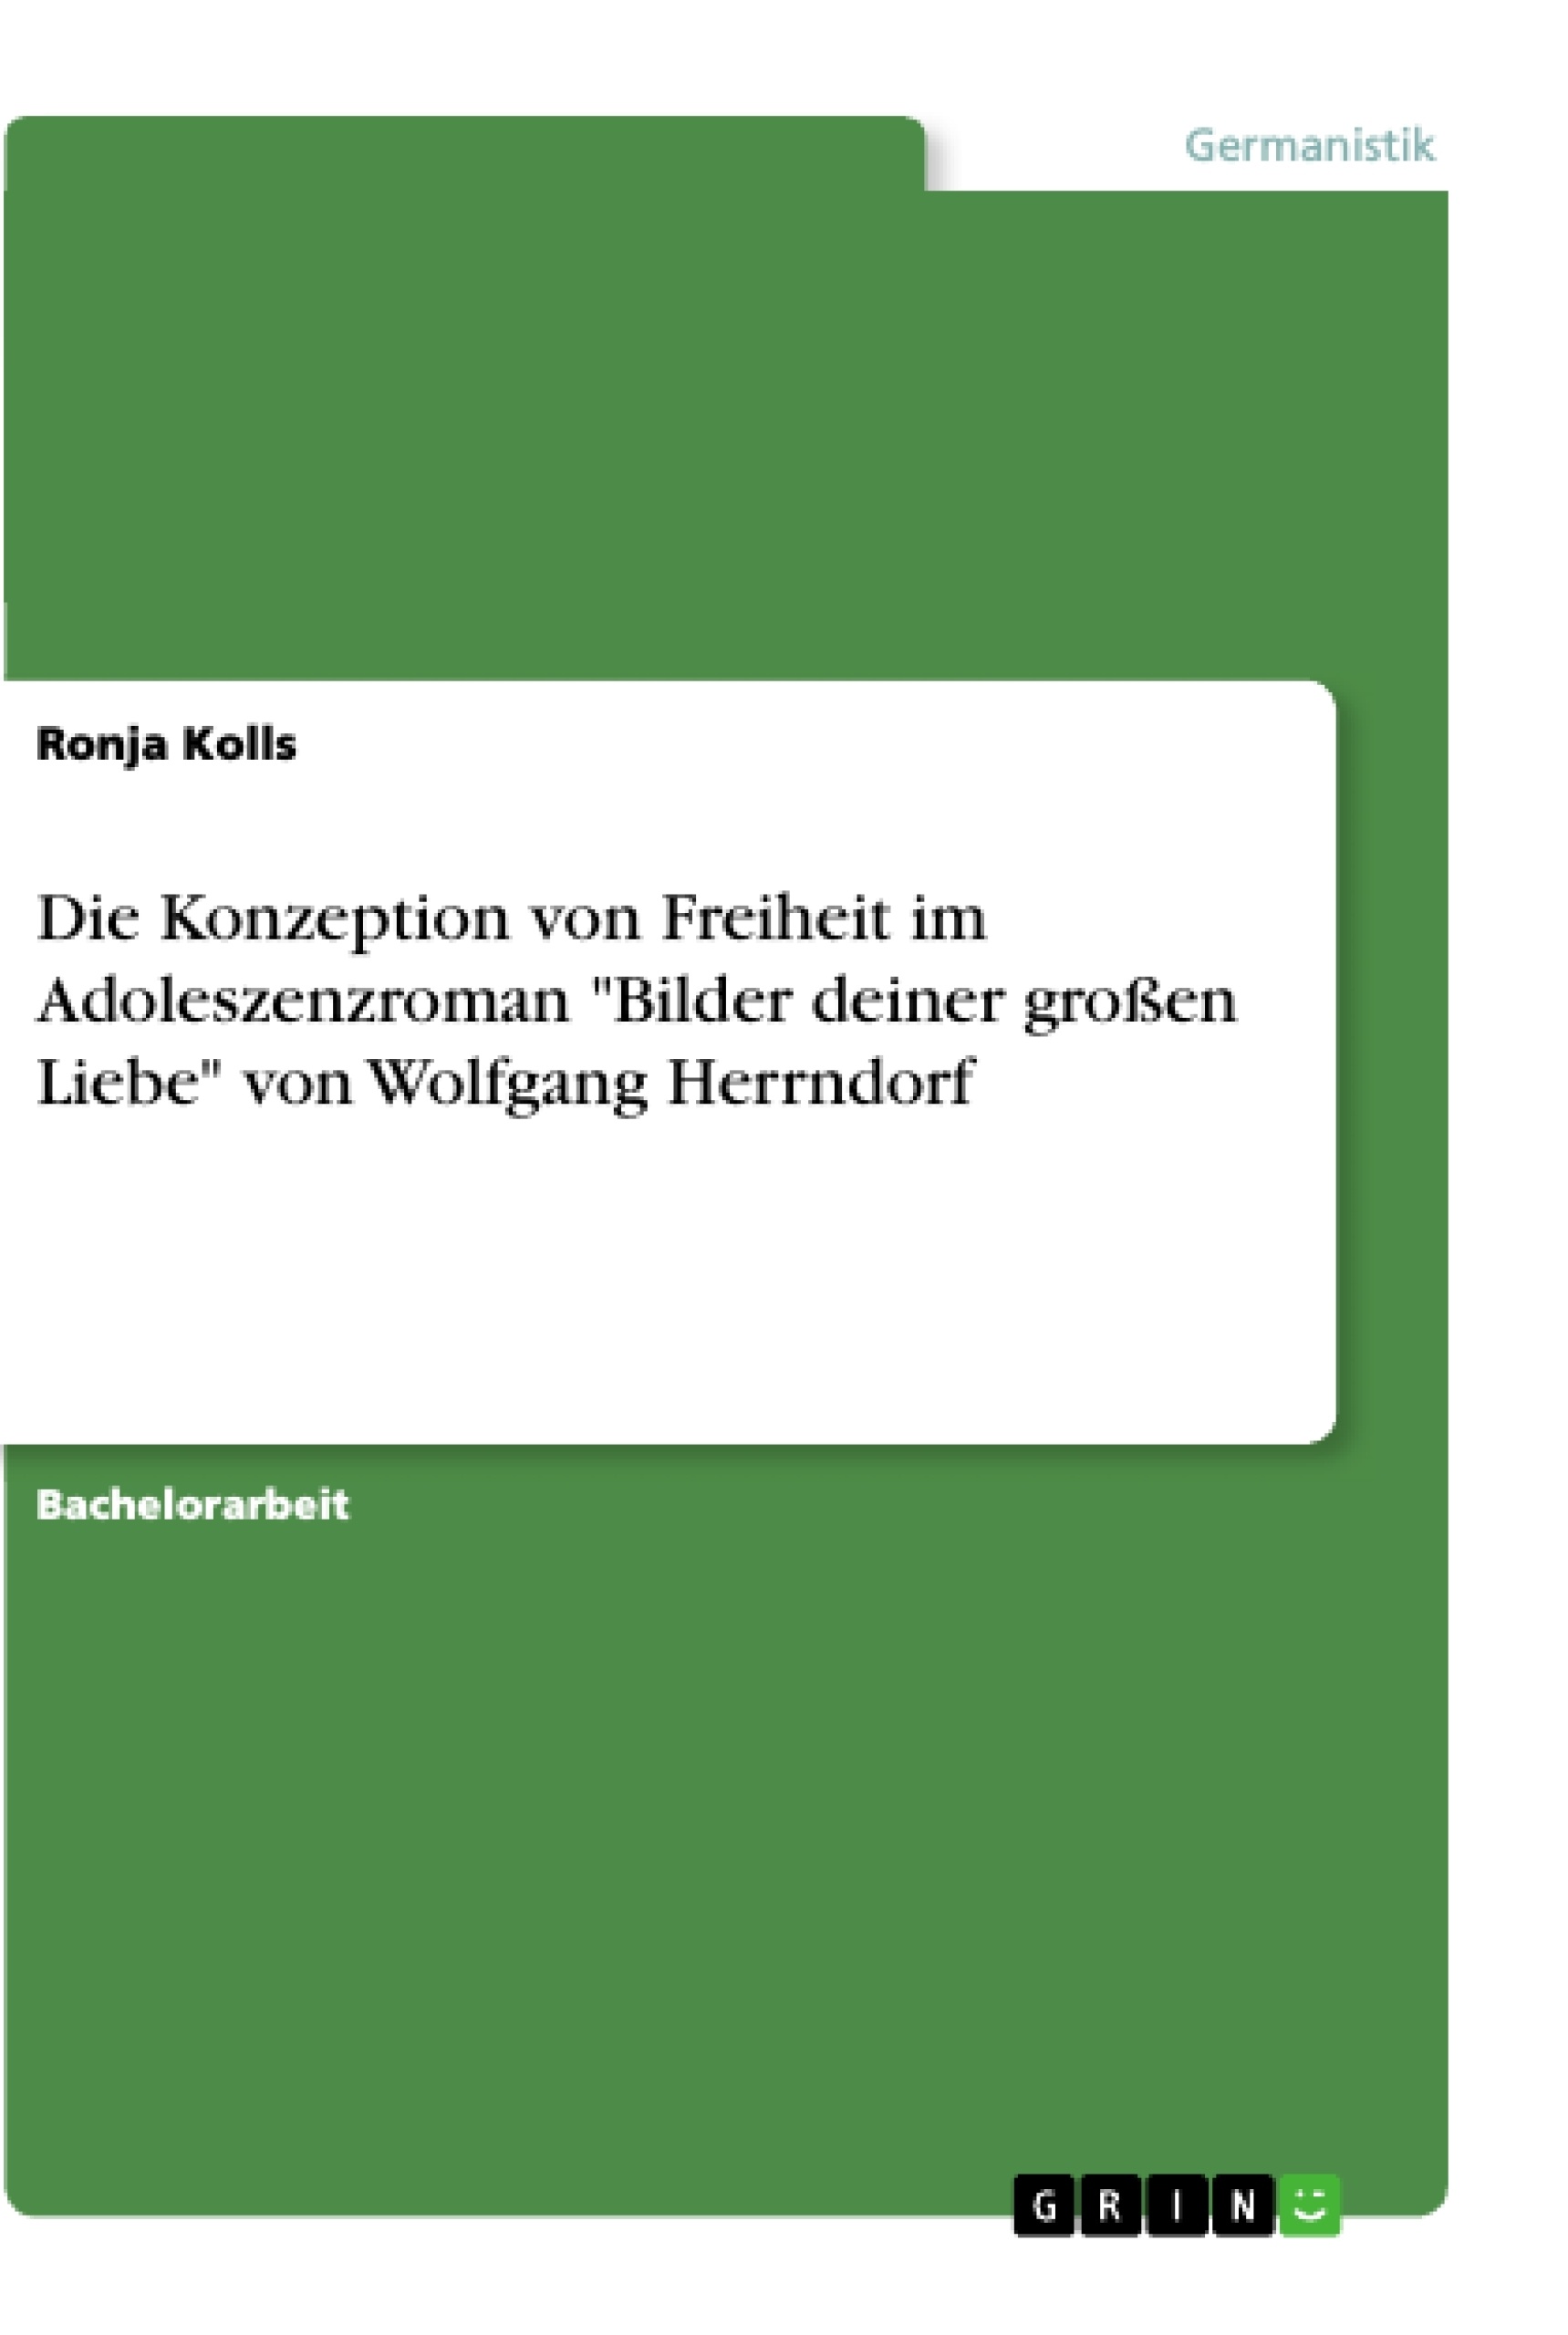 Título: Die Konzeption von Freiheit im Adoleszenzroman "Bilder deiner großen Liebe" von Wolfgang Herrndorf